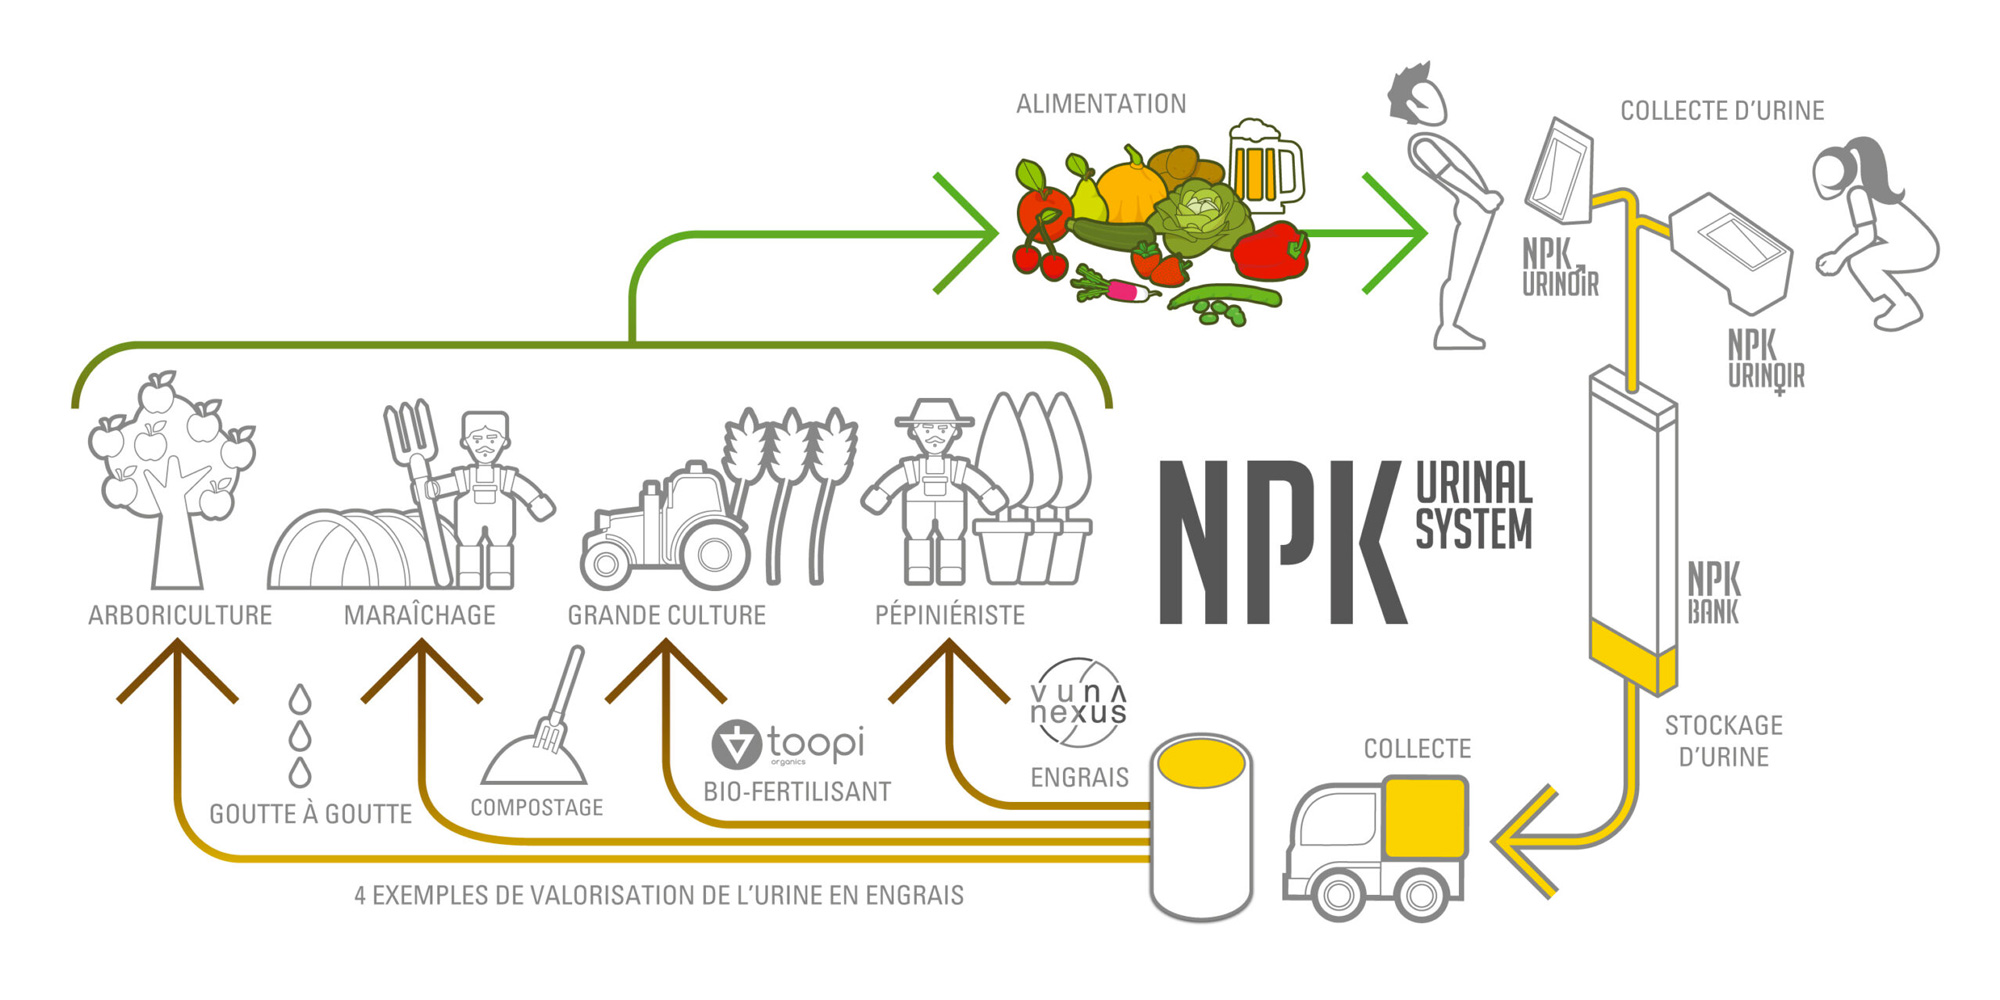 Schéma d'économie circulaire de l'urine pour le système NPK. Étapes : collecte des urines / stockage des urines / transport des urines / valorisation des urines par Toopi Organics - Vuna Nexus - Compostage - goutte à goutte